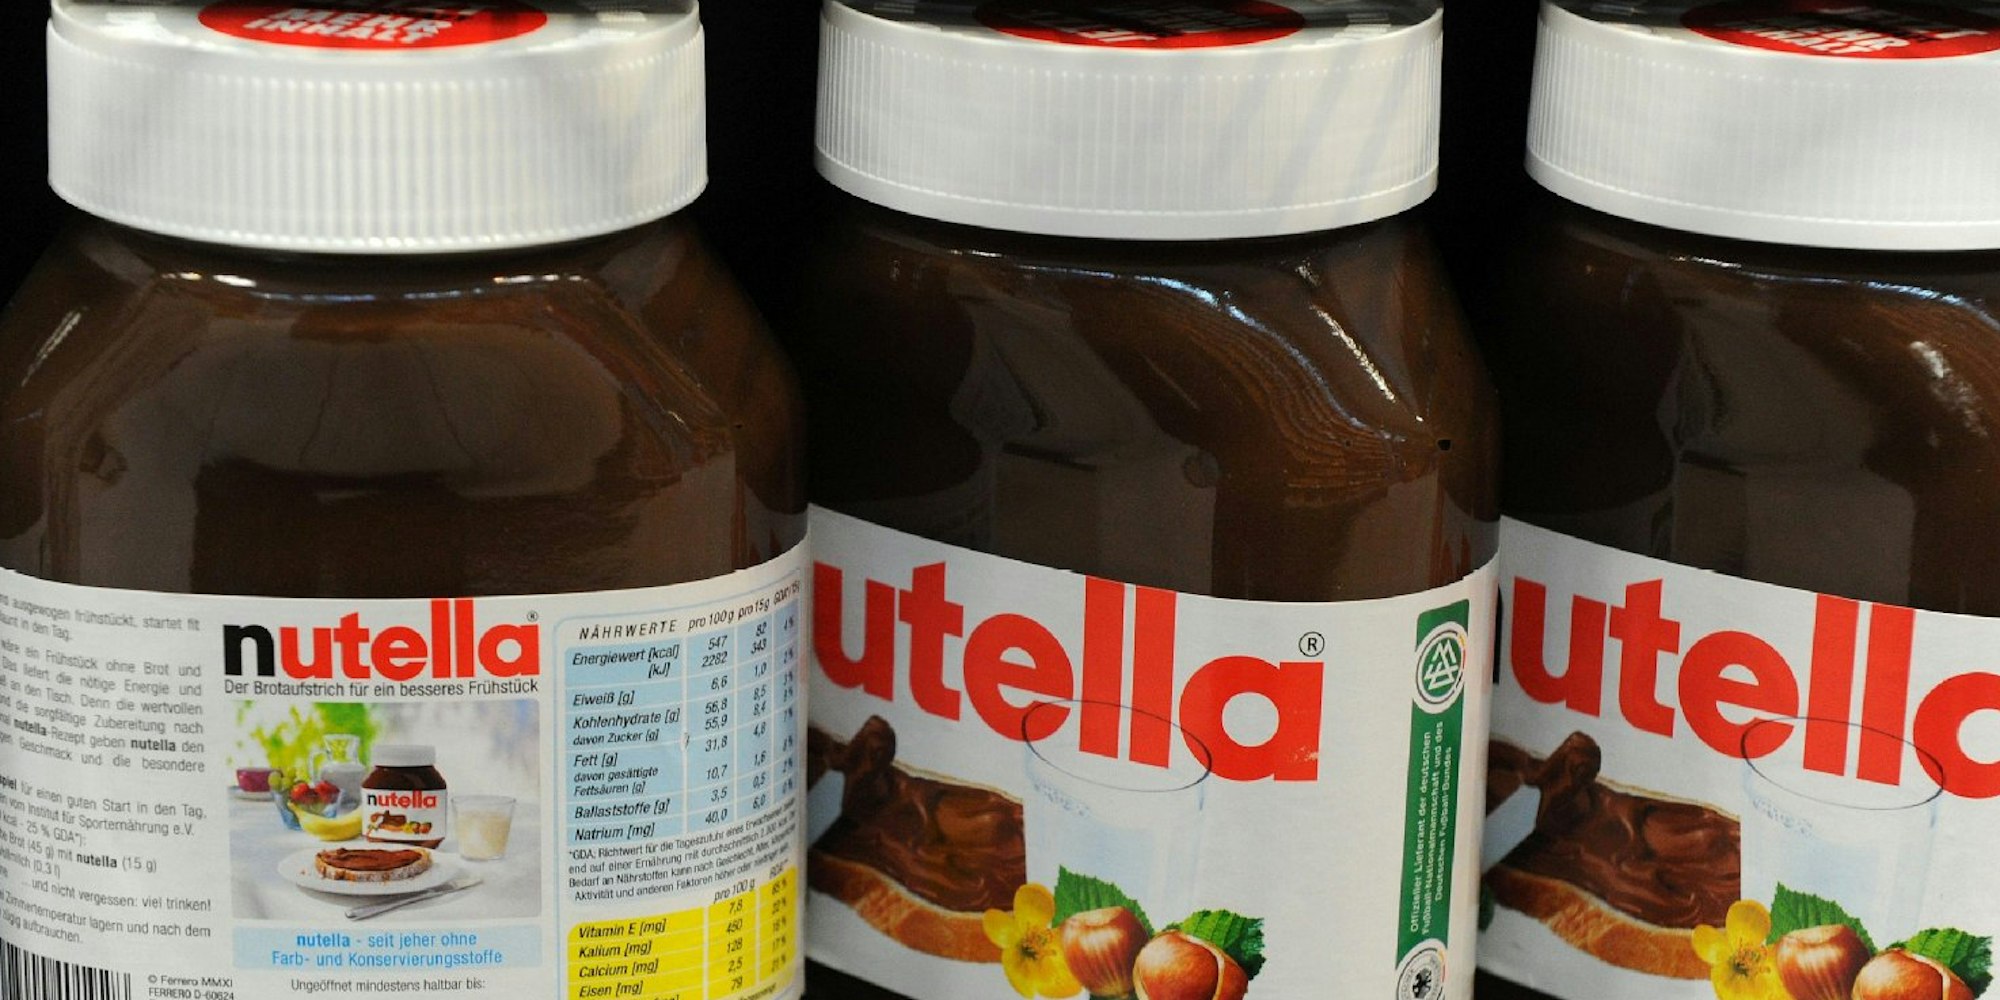 Darf man Nutella in den Kühlschrank stellen?